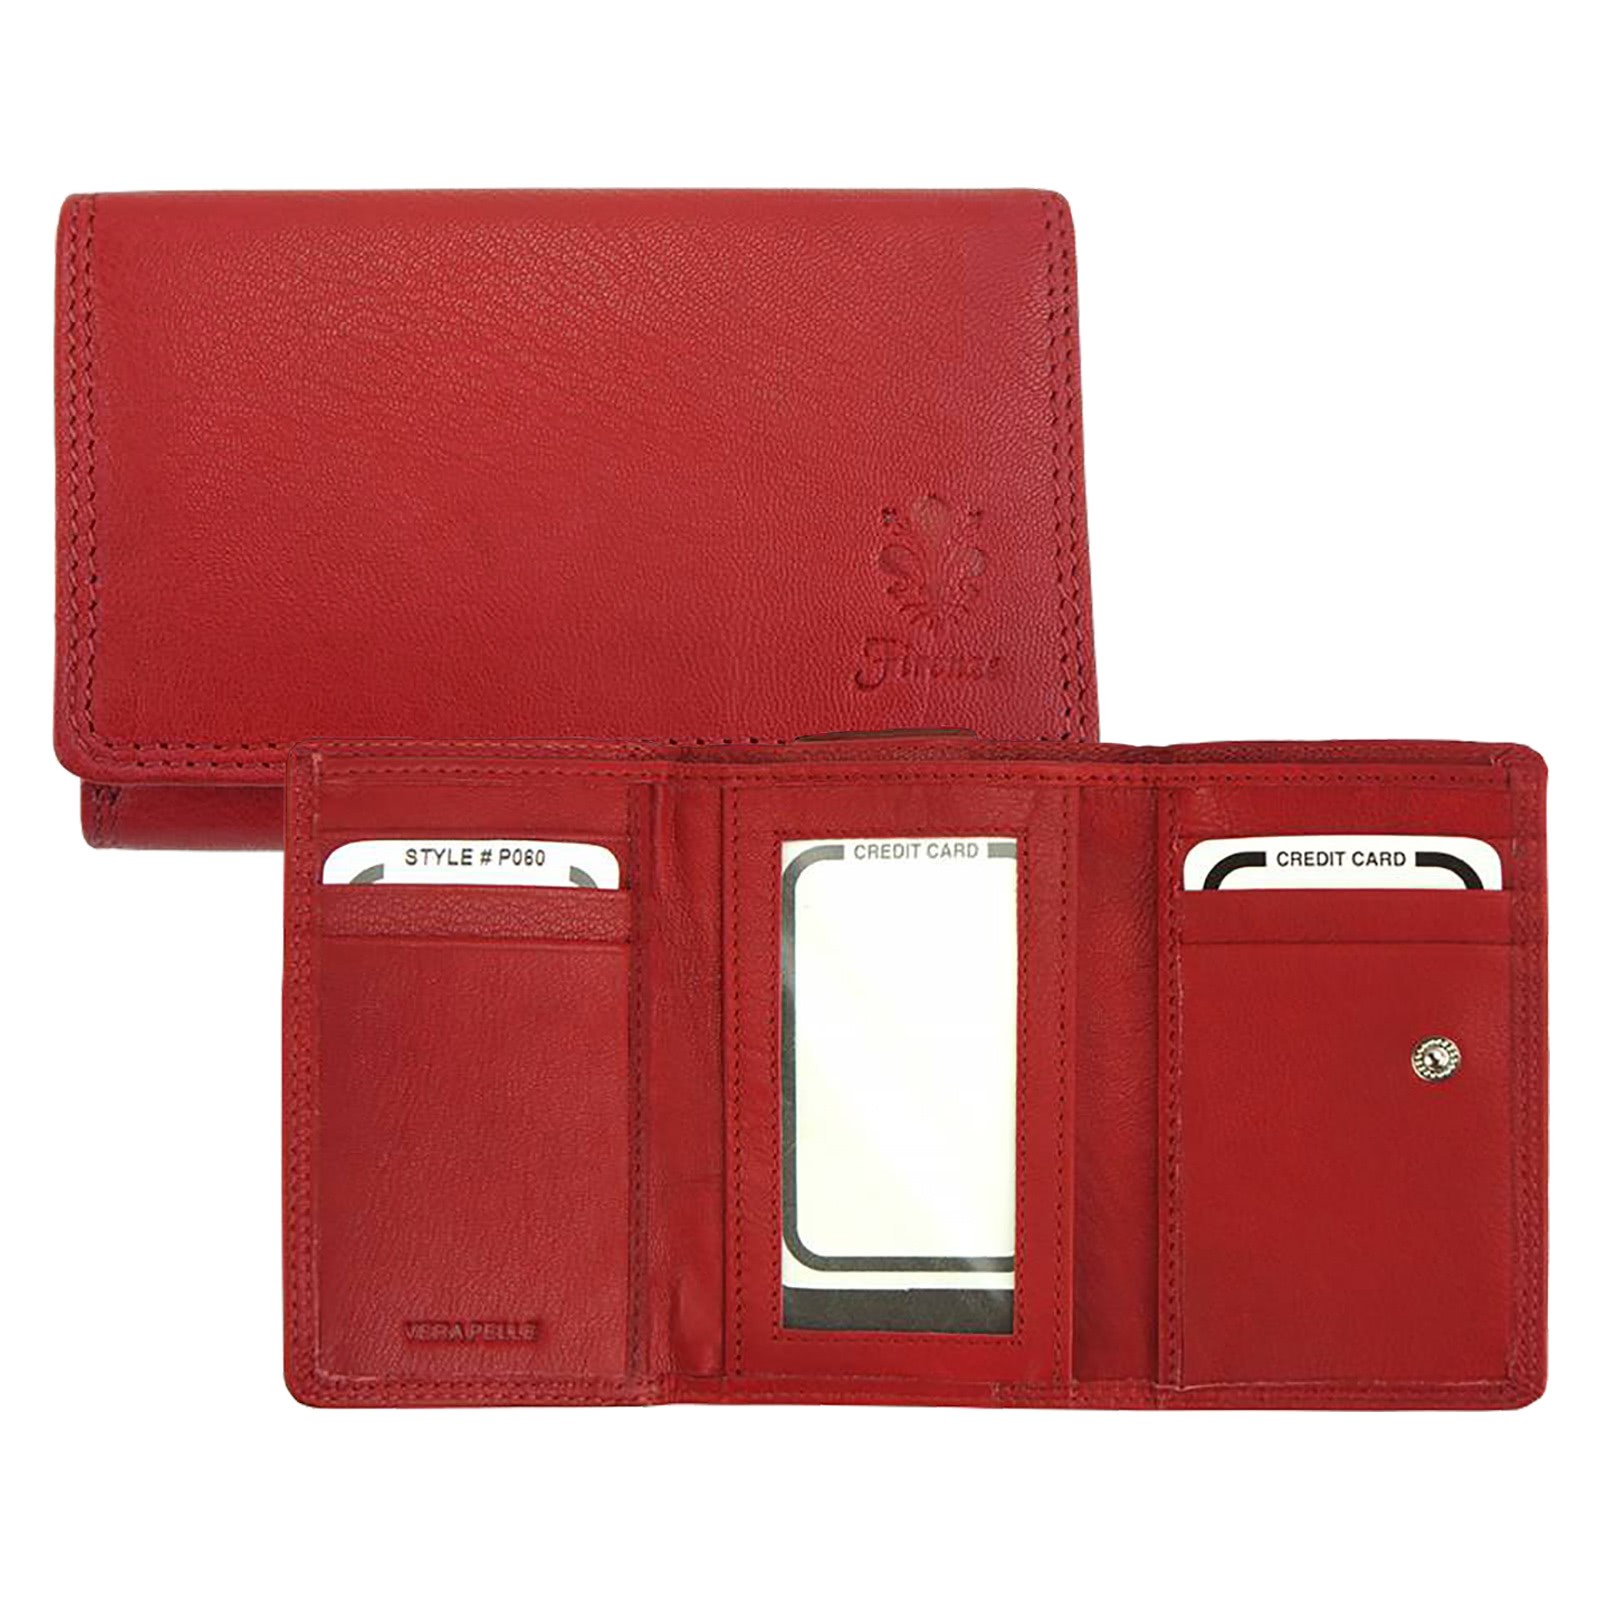 Florence Portemonnaie echtes Leder Geldbörse Damen Brieftasche rot OPF701R